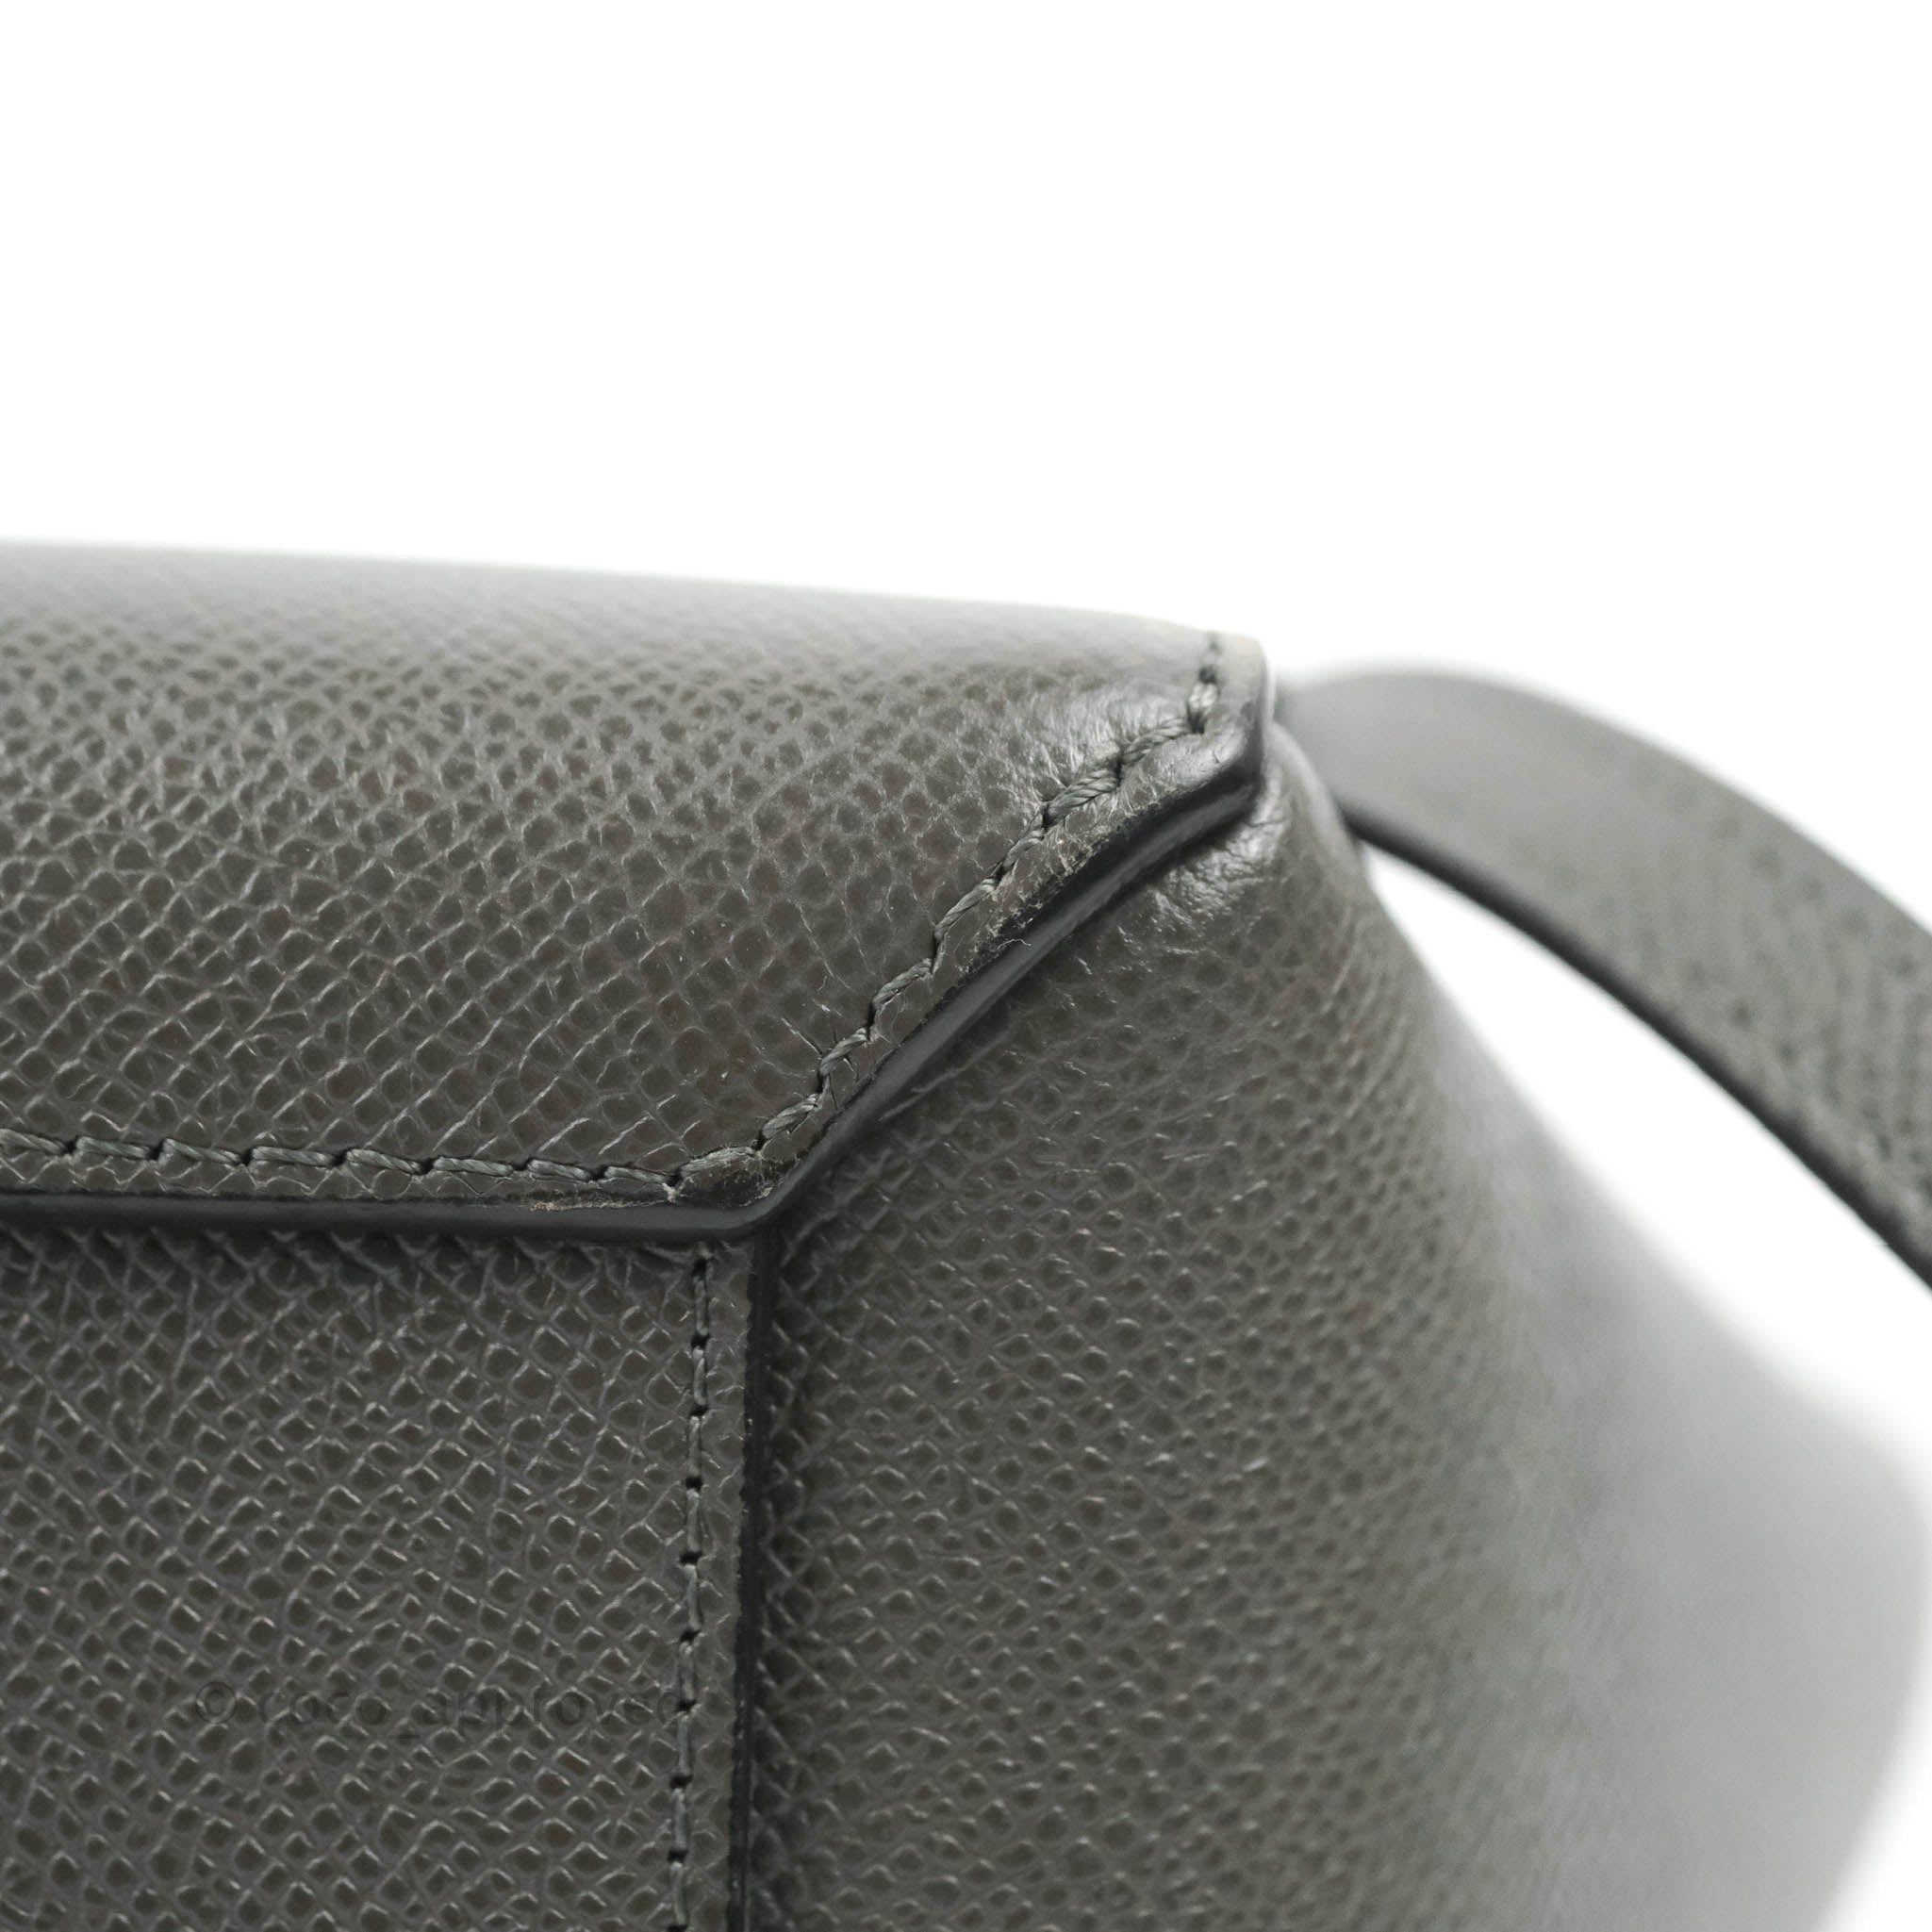 Celine Nano Belt Bag Grey Grained Calfskin Gold Hardware – Coco Approved  Studio